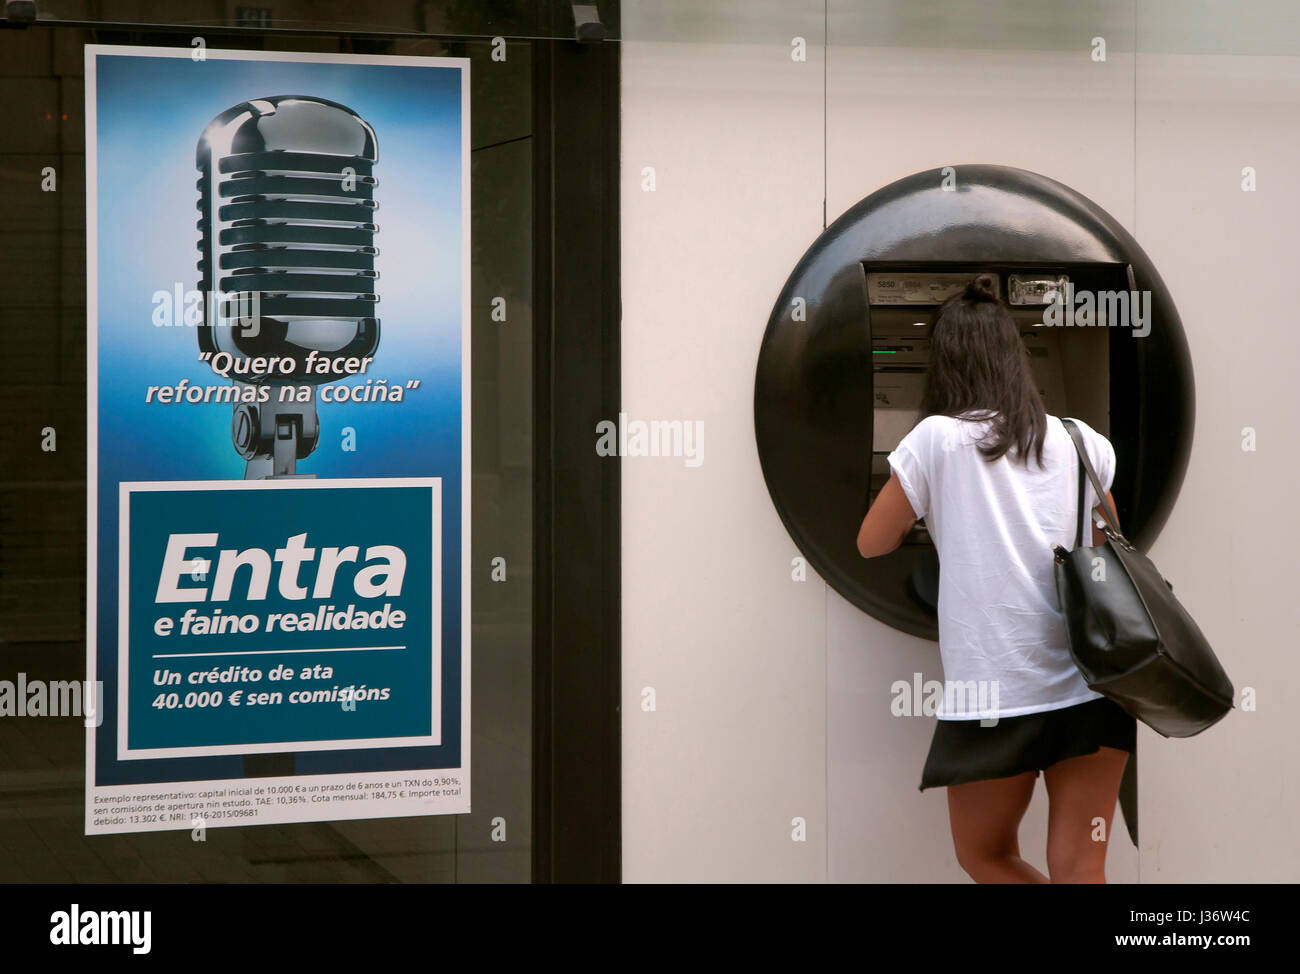 Banque, guichet automatique bancaire (GAB) et de la publicité dans la langue galicienne, Lugo, Région de Galice, Espagne, Europe Banque D'Images